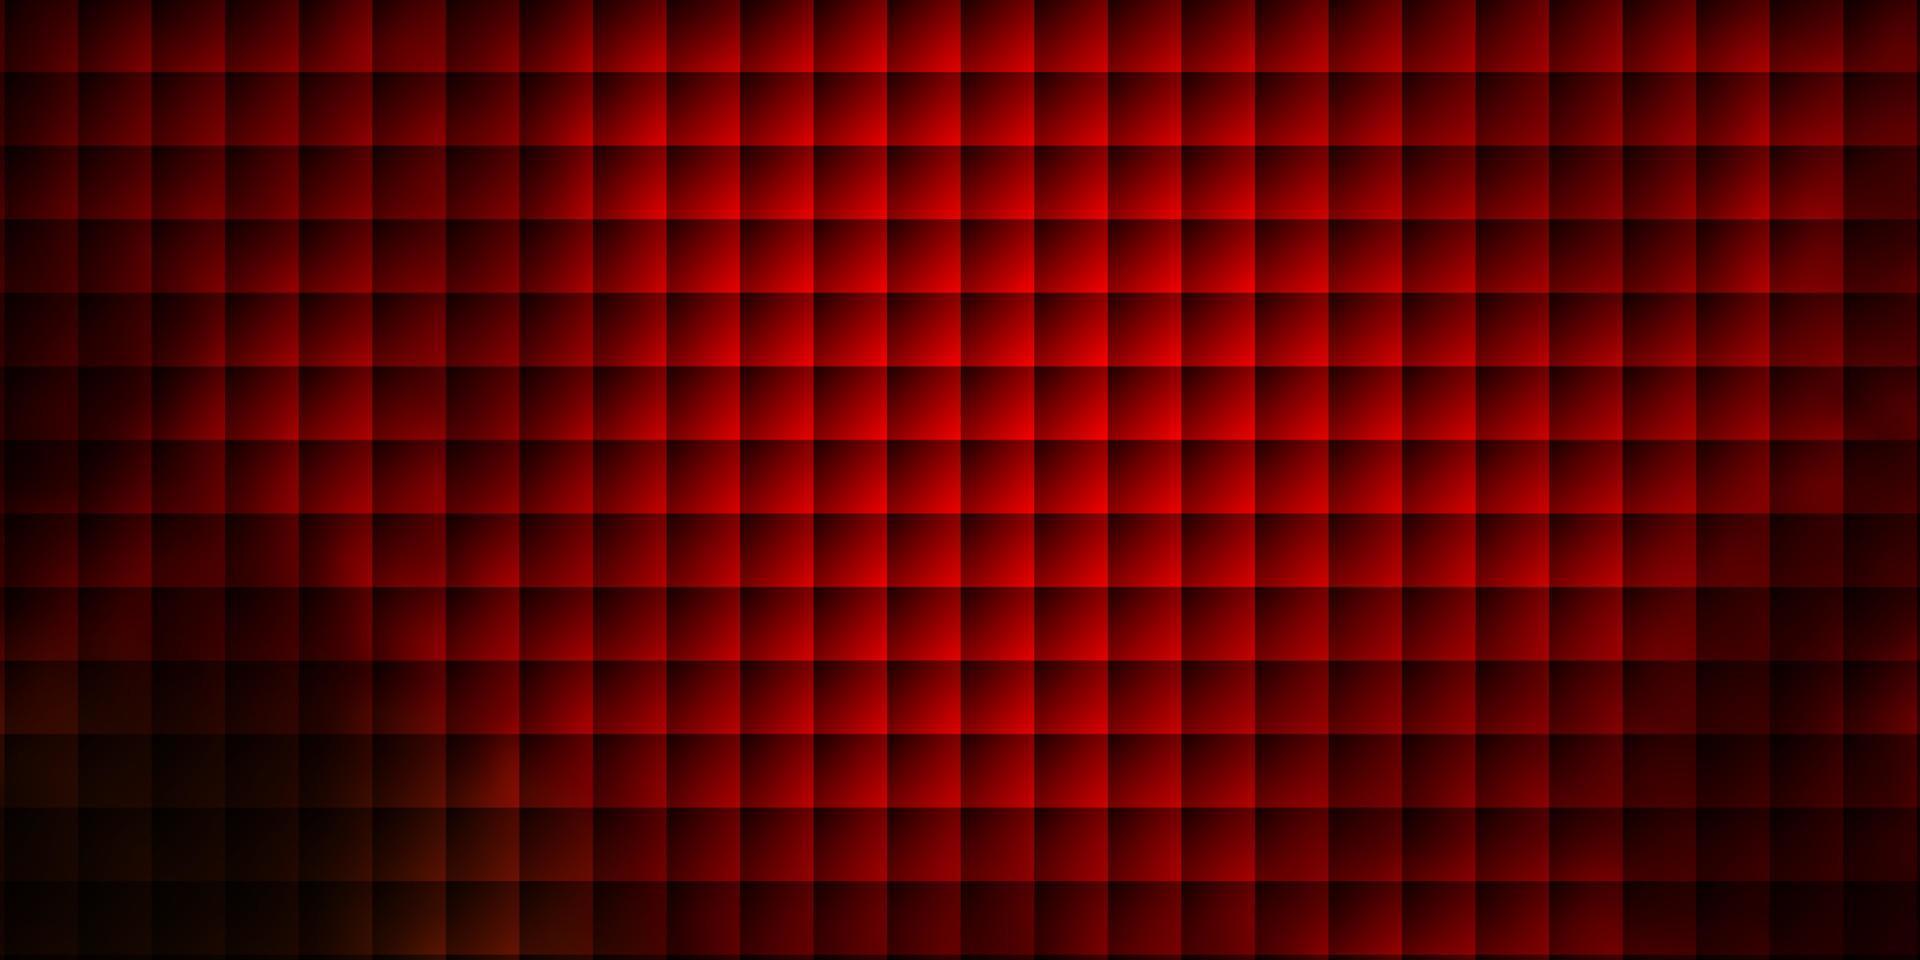 padrão de vetor verde e vermelho escuro em estilo quadrado.